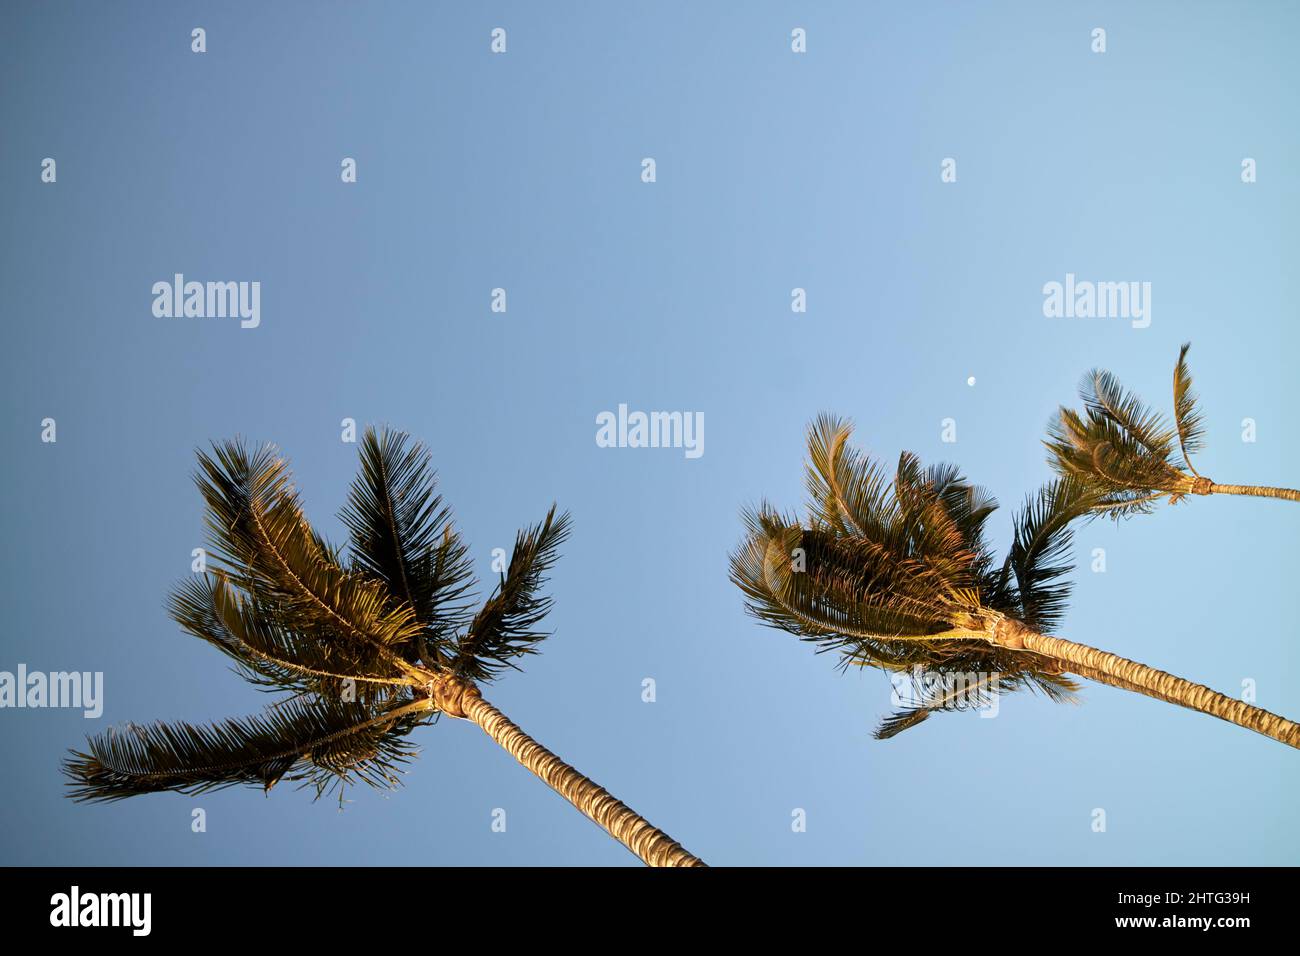 Le vent souffle palmiers avec la lune qui s'élève dans le ciel bleu clair Lanzarote, îles canaries, espagne Banque D'Images